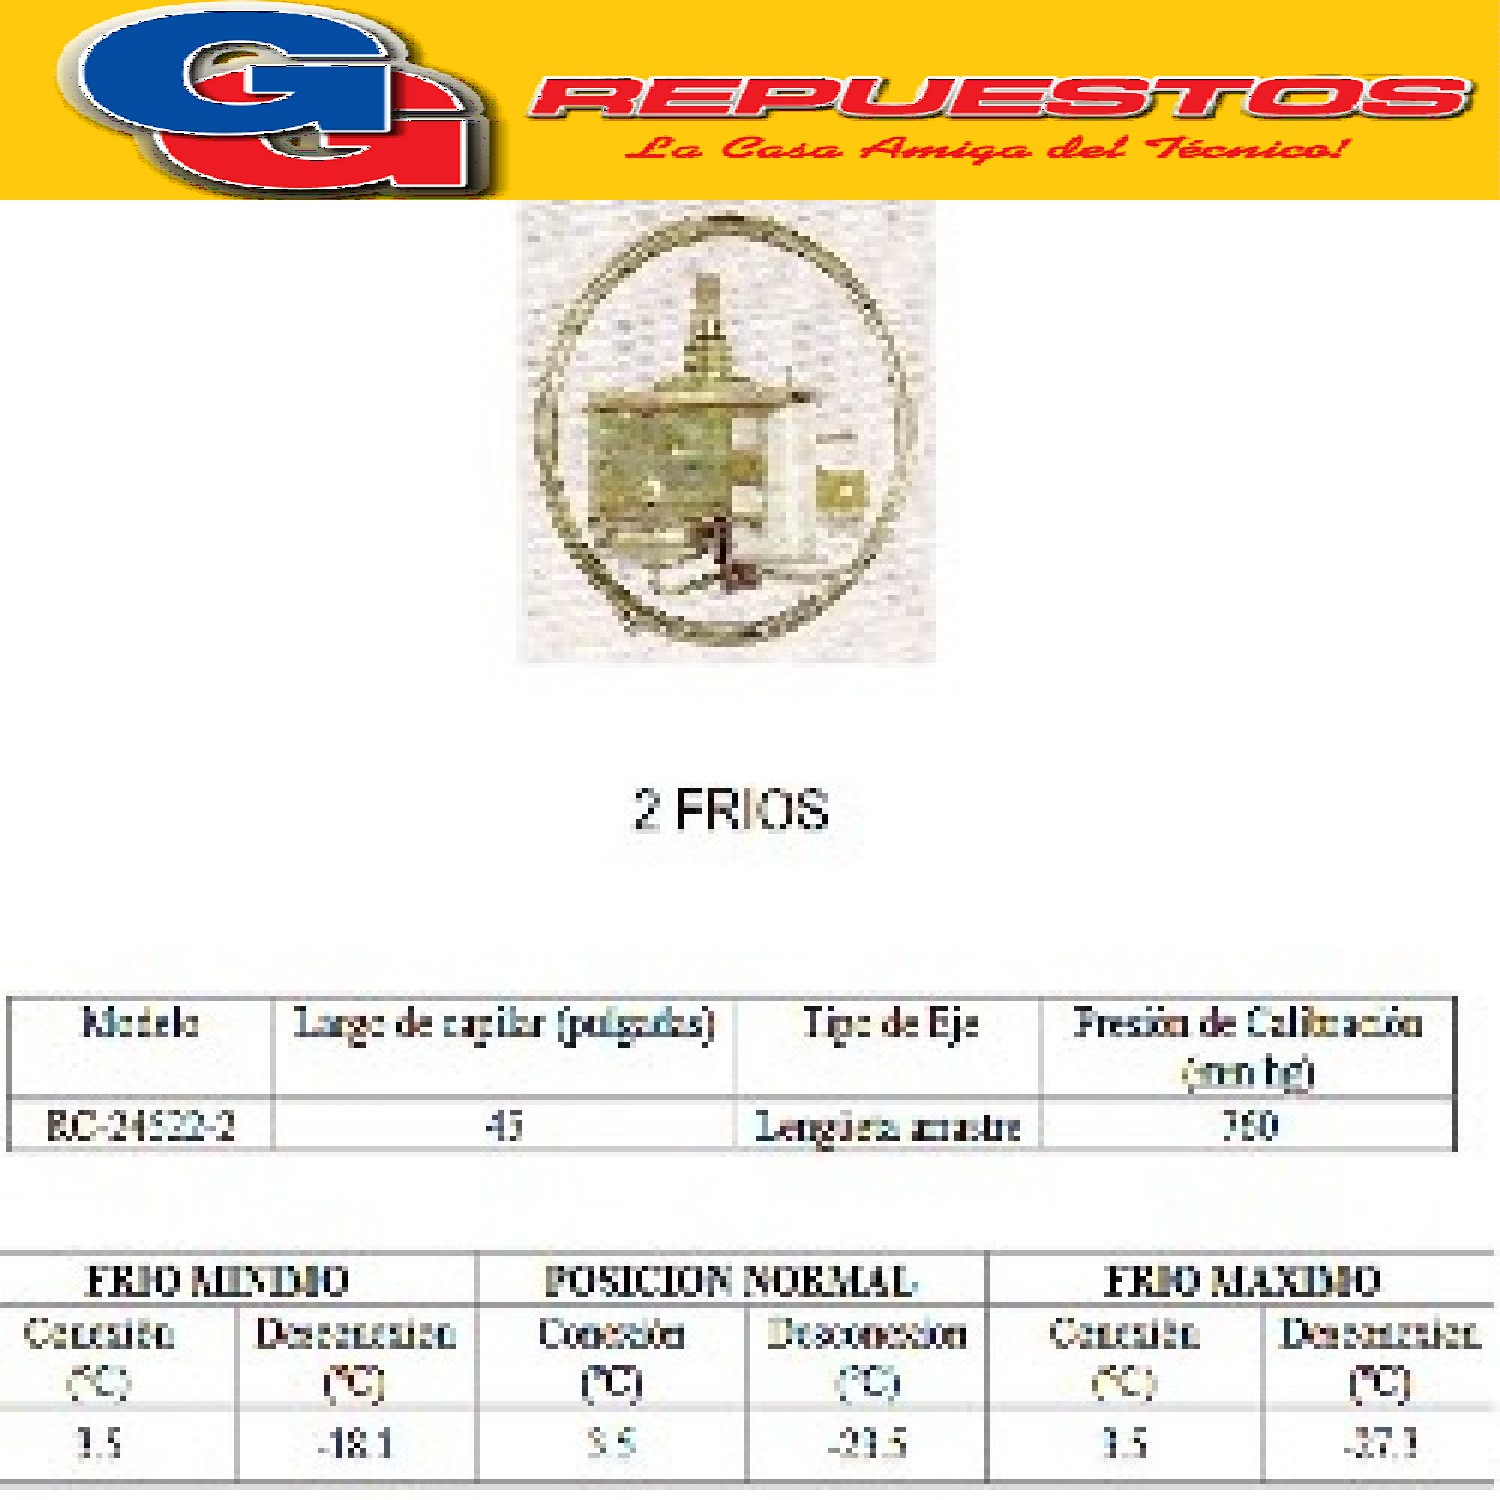 TERMOSTATO TIPO RC 24522-2S / PEABODY / 2 FRIOS 3 CONTACTOS EJE REDONDO CON LENGUETA (+3.5-18.1_-23.5_-27.3)